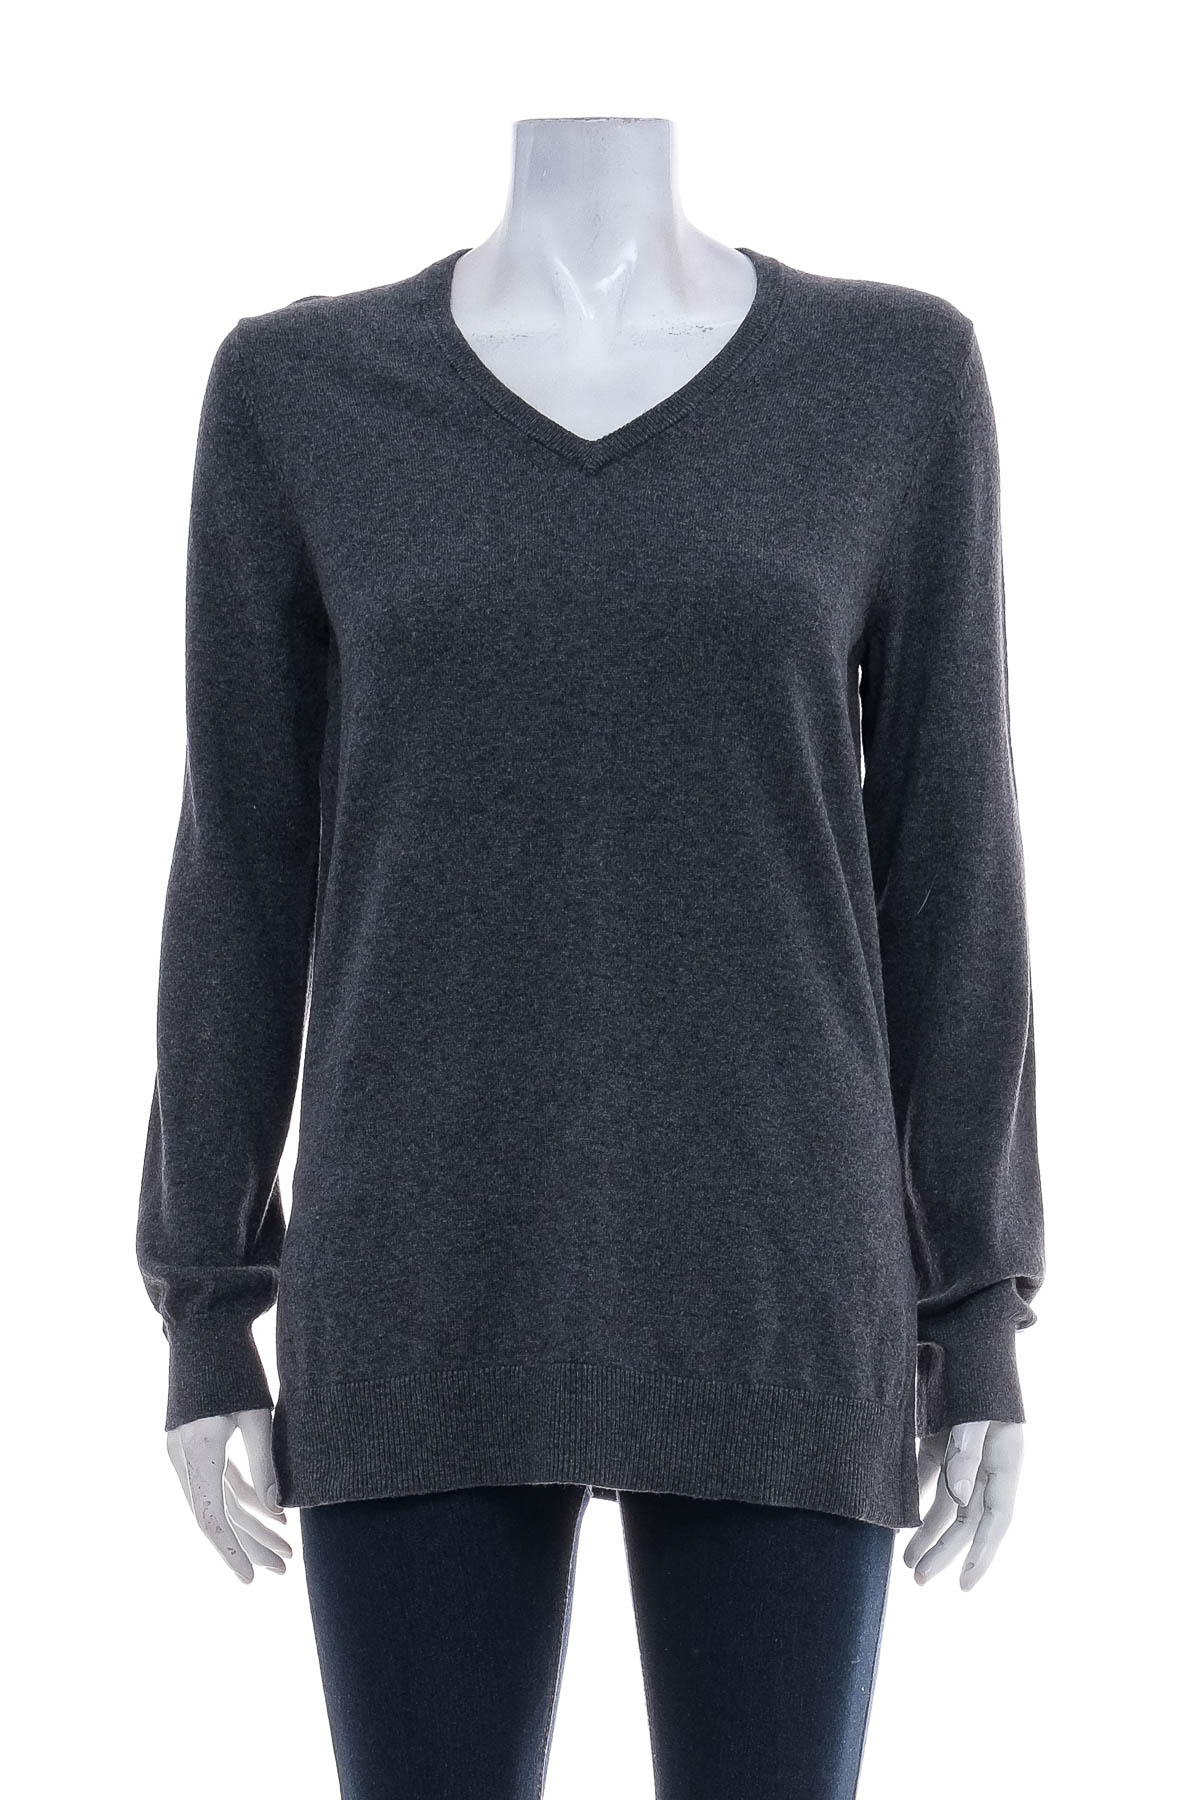 Women's sweater - Lawrence Grey - 0